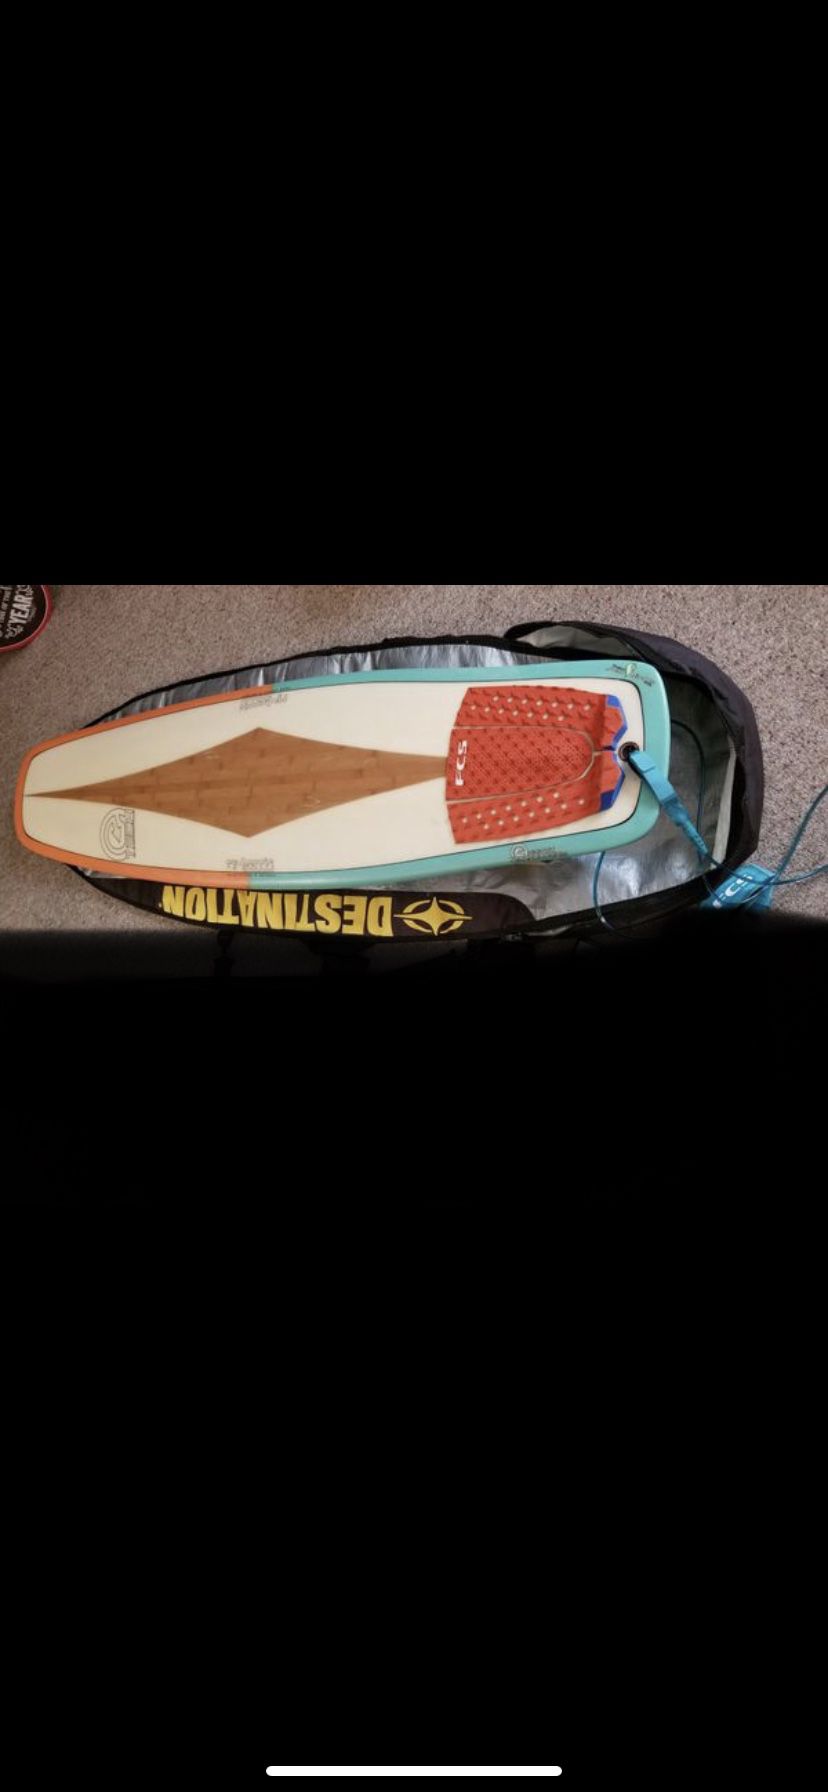 Ry Harris ecotech duckbill surfboard